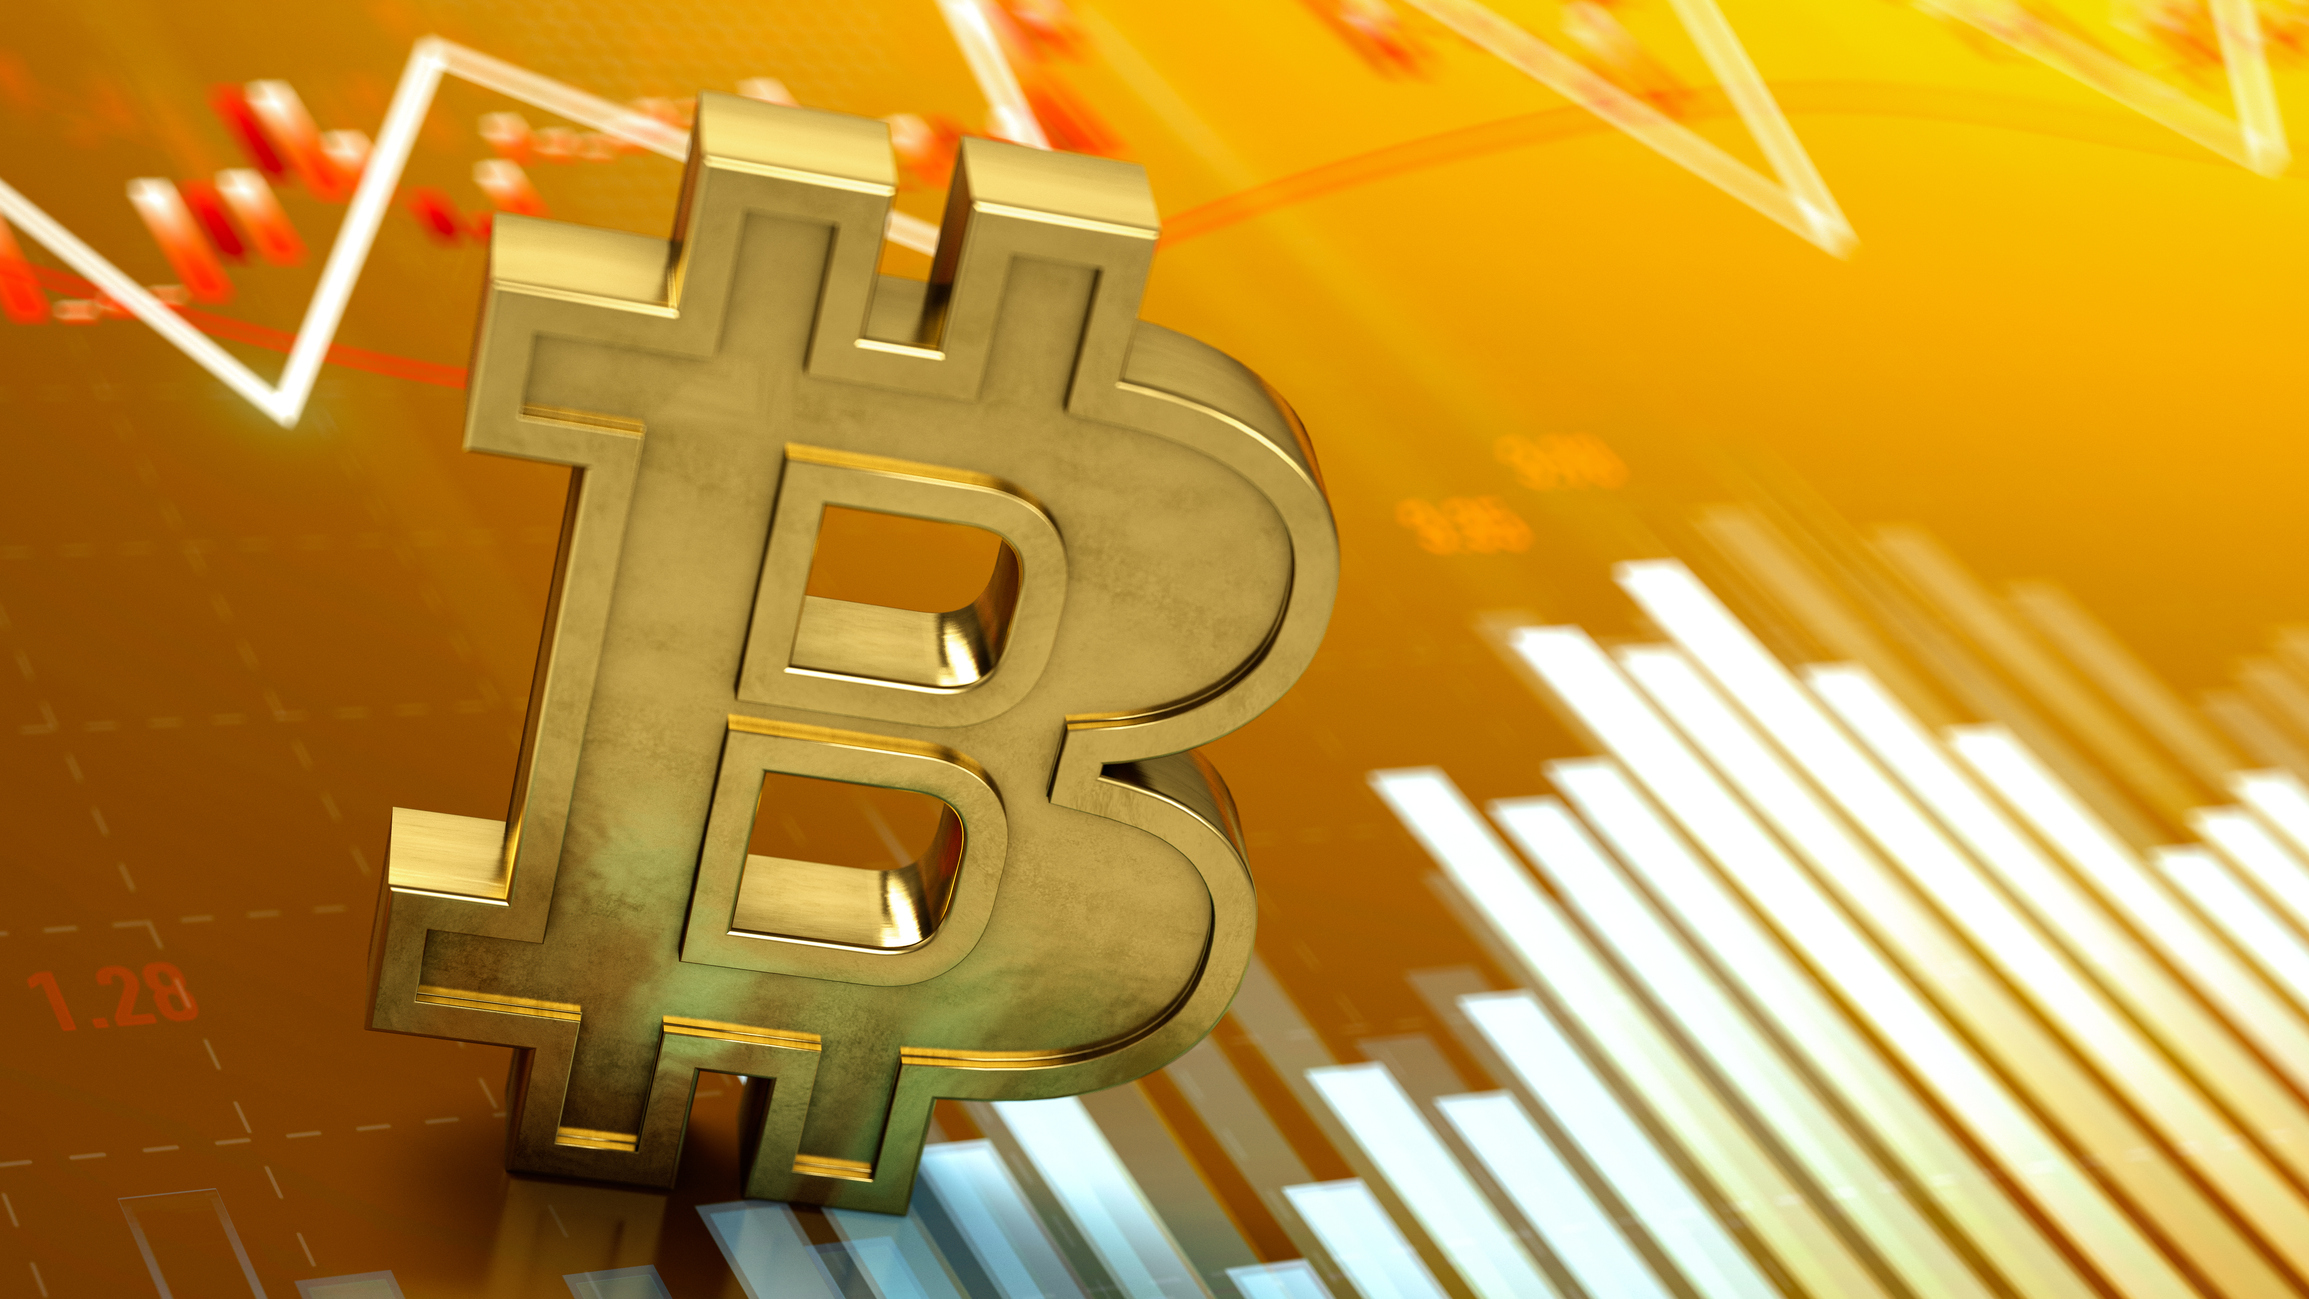 Criptos hoje: Bitcoin opera em alta após anúncio da SEC, ICP dispara 25% e OpenSea levanta US$ 300 milhões